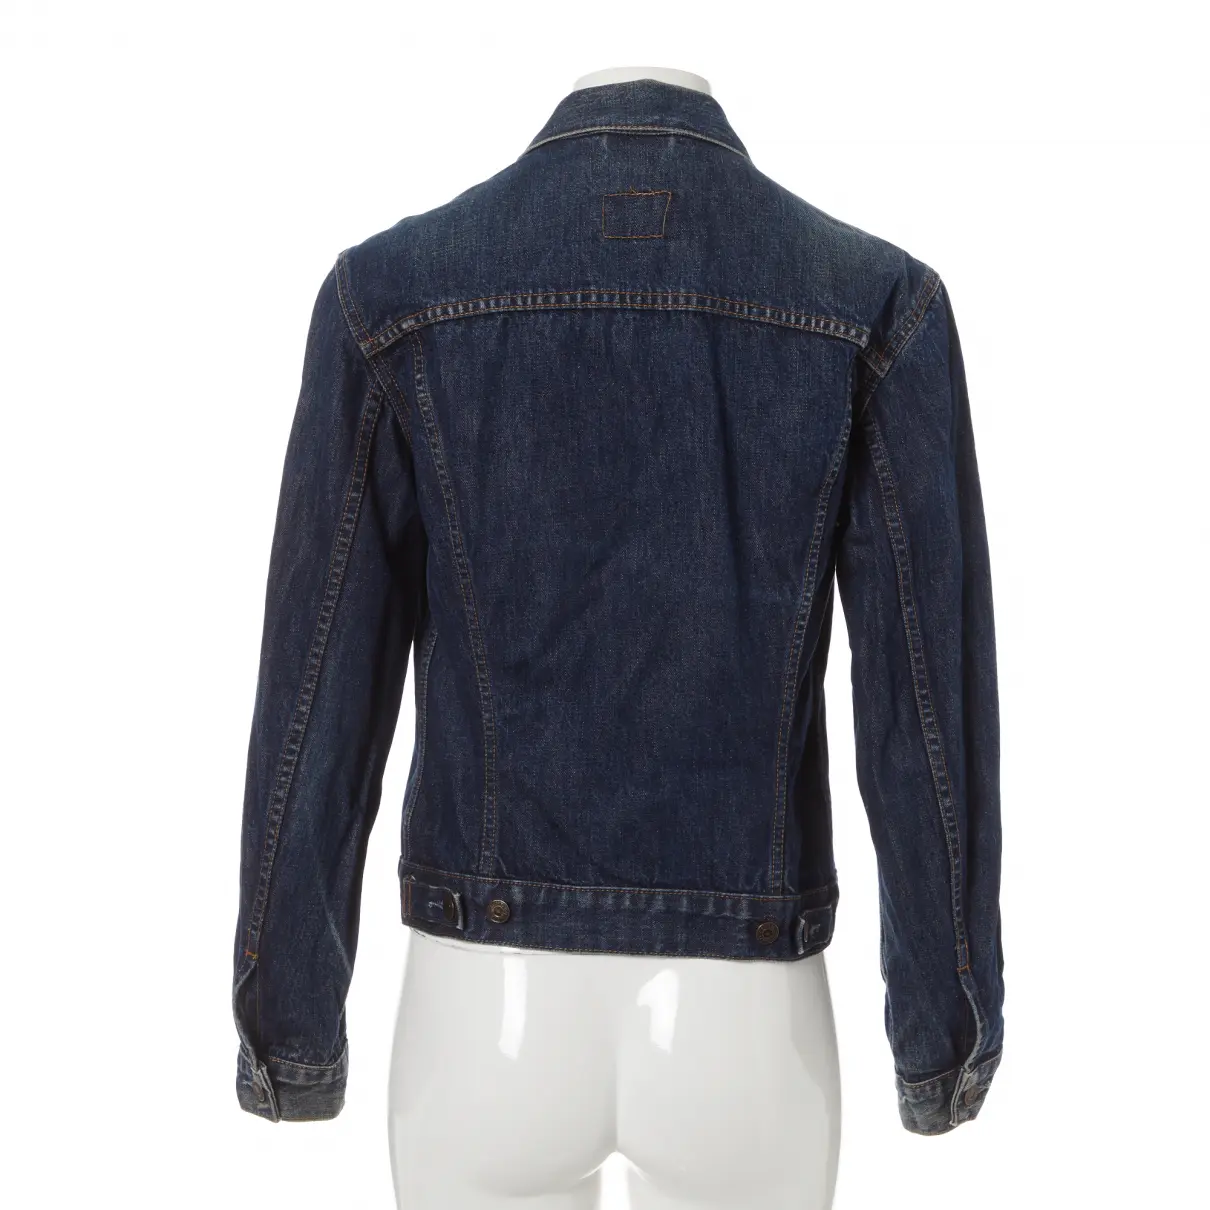 Buy Levi's Jacket online - Vintage